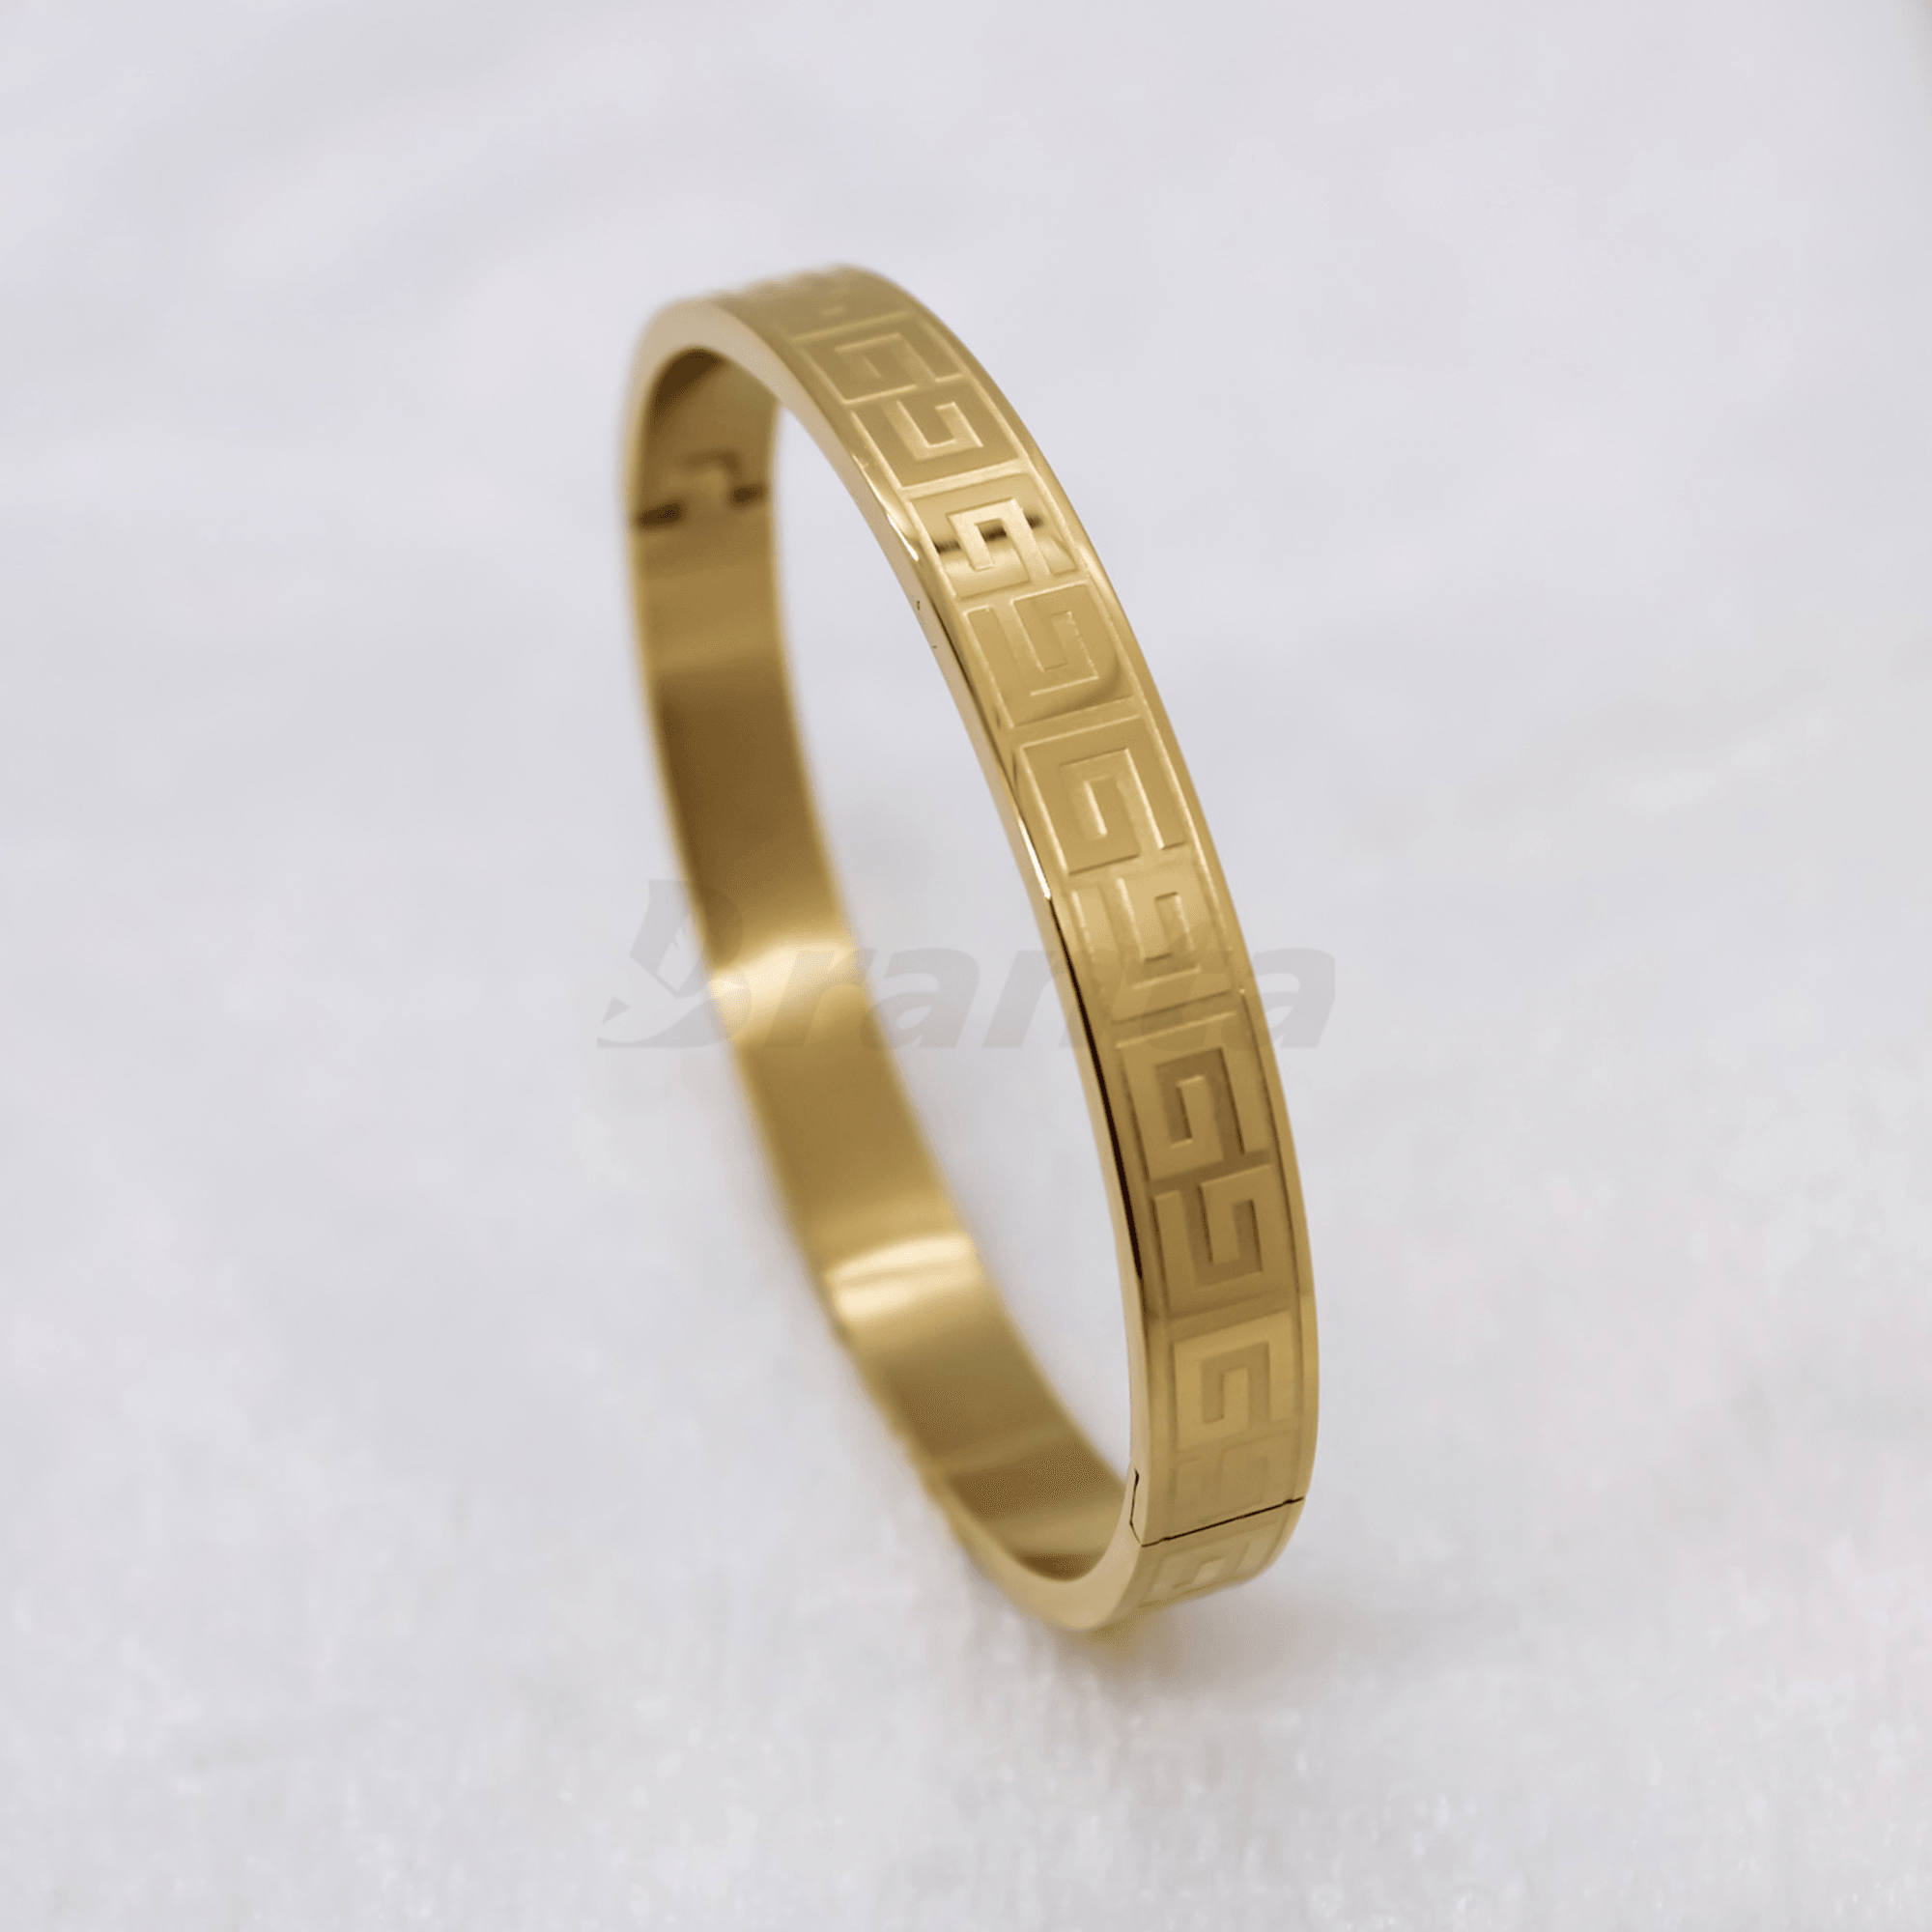 Mens Gold Bracelets | Mens bracelet gold jewelry, Man gold bracelet design,  Mens jewelry bracelet